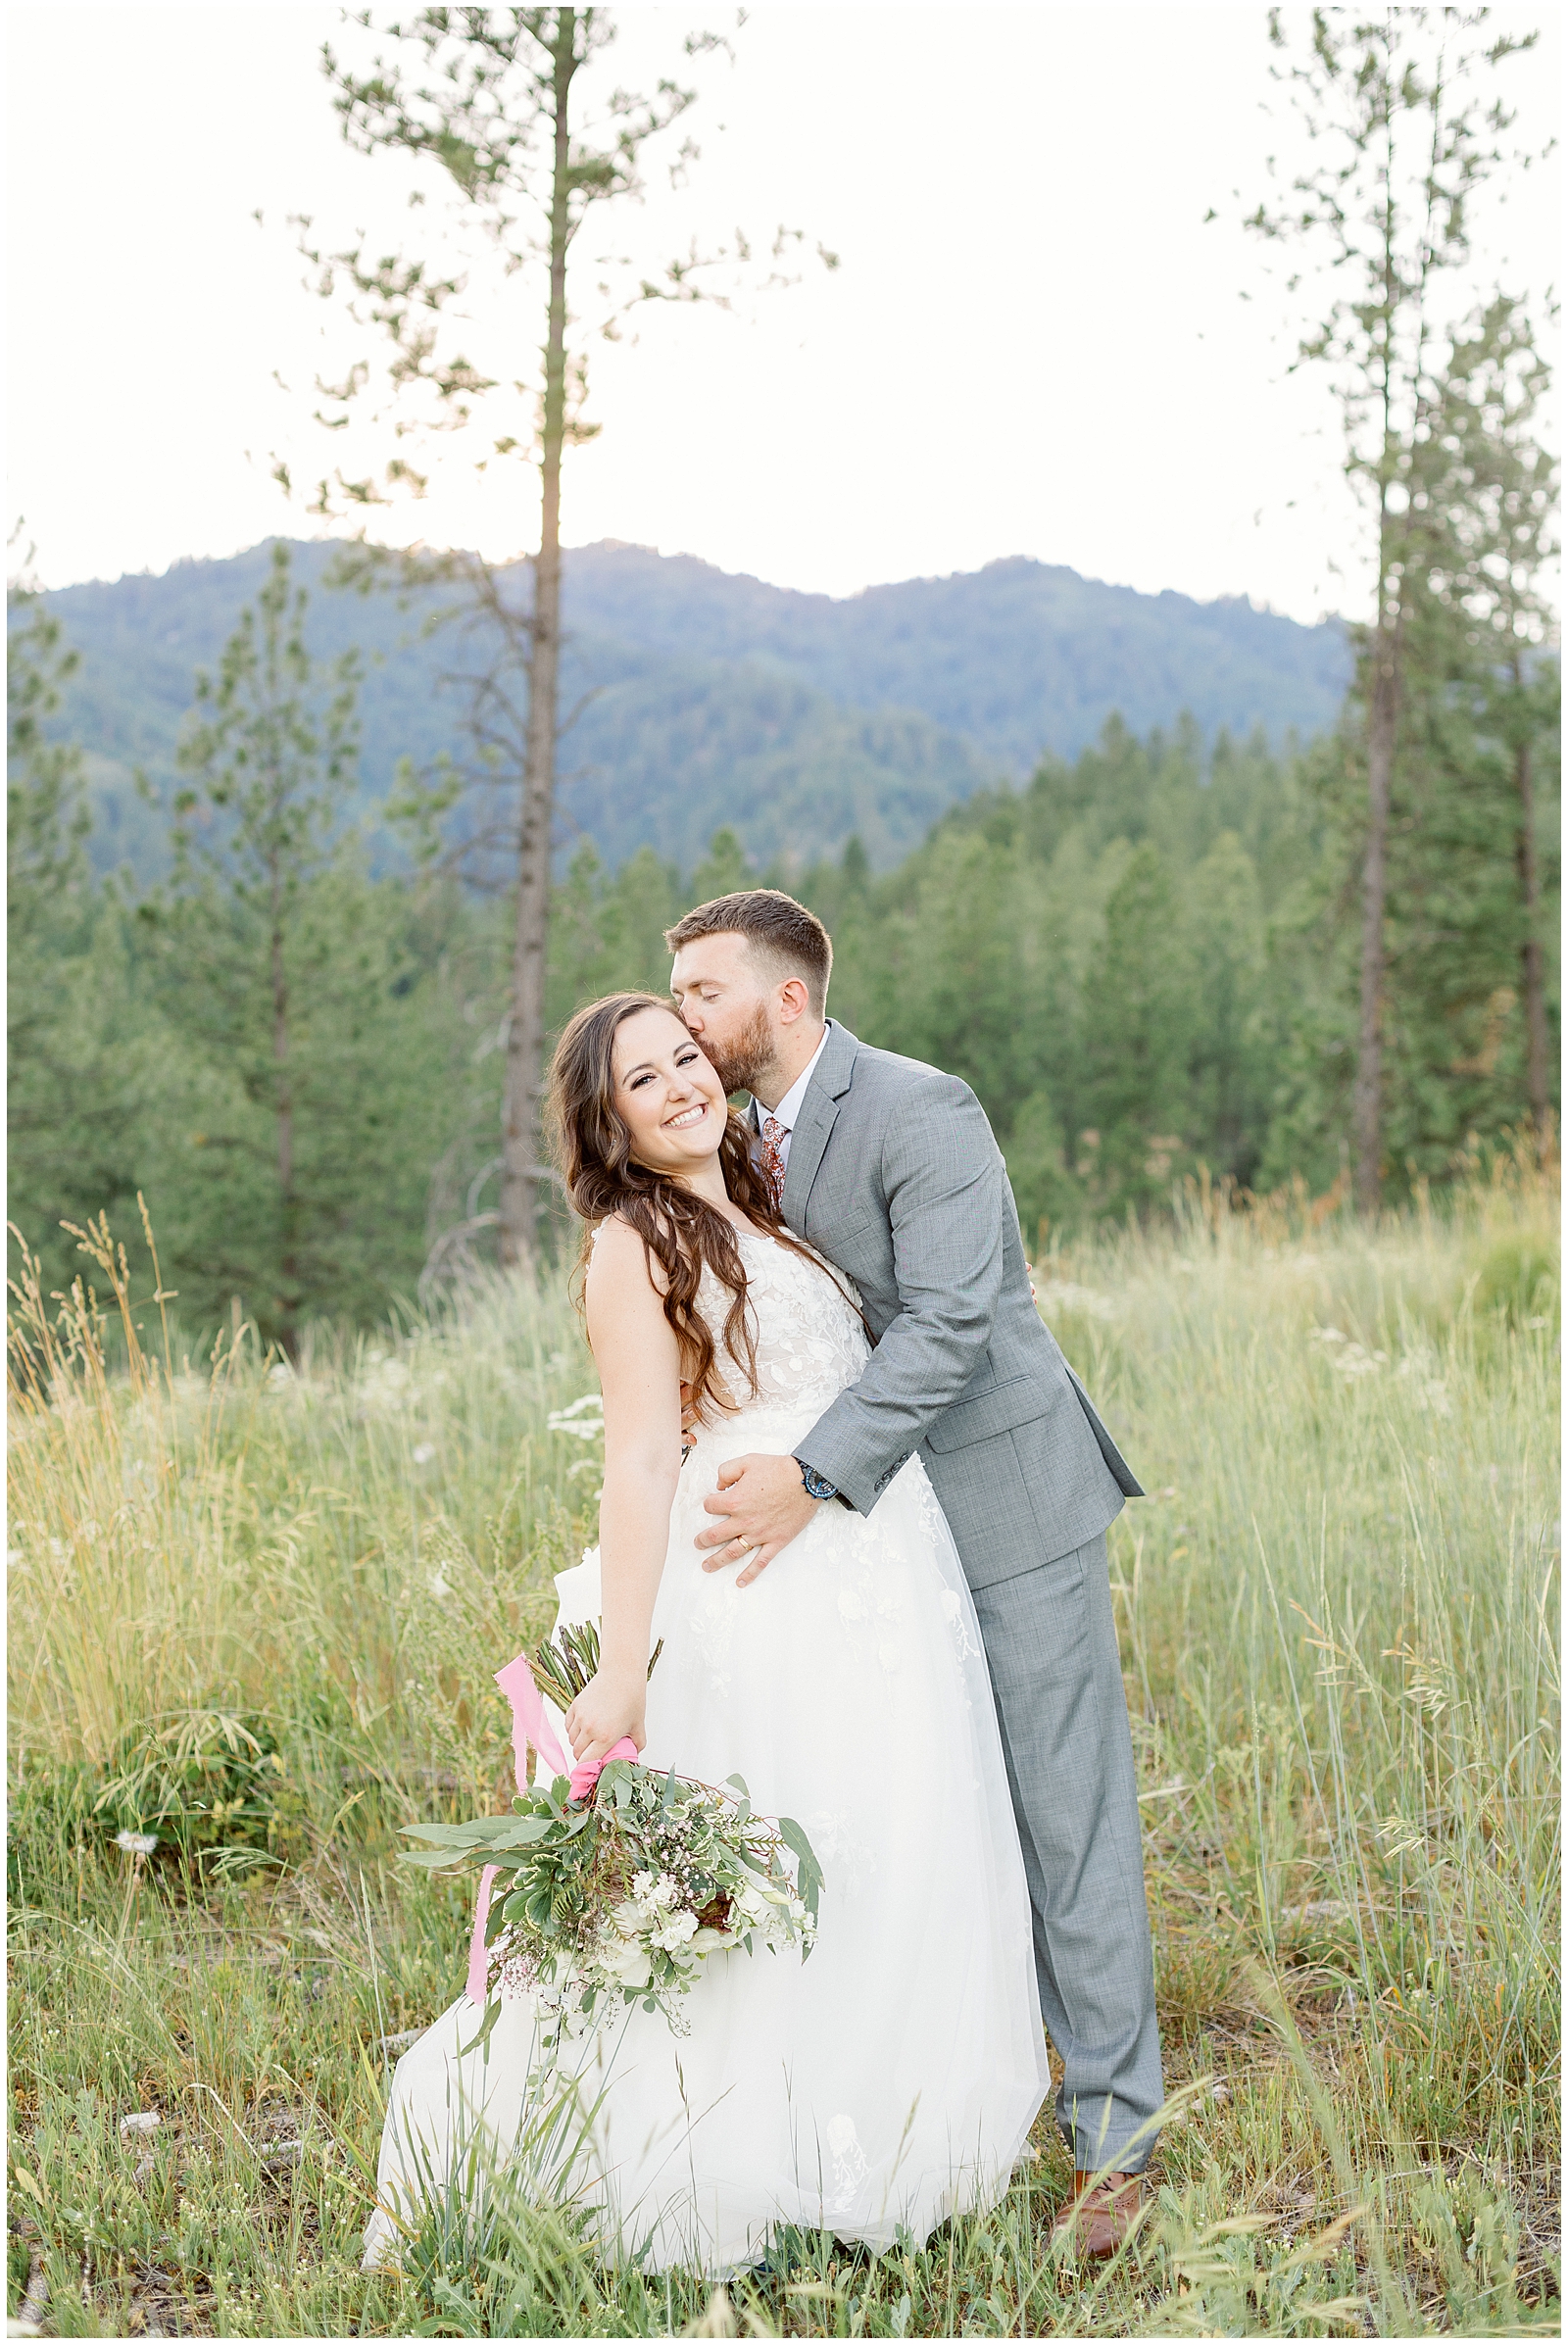 Gorgeous Idaho Mountain Wedding Golden Hour Portraits